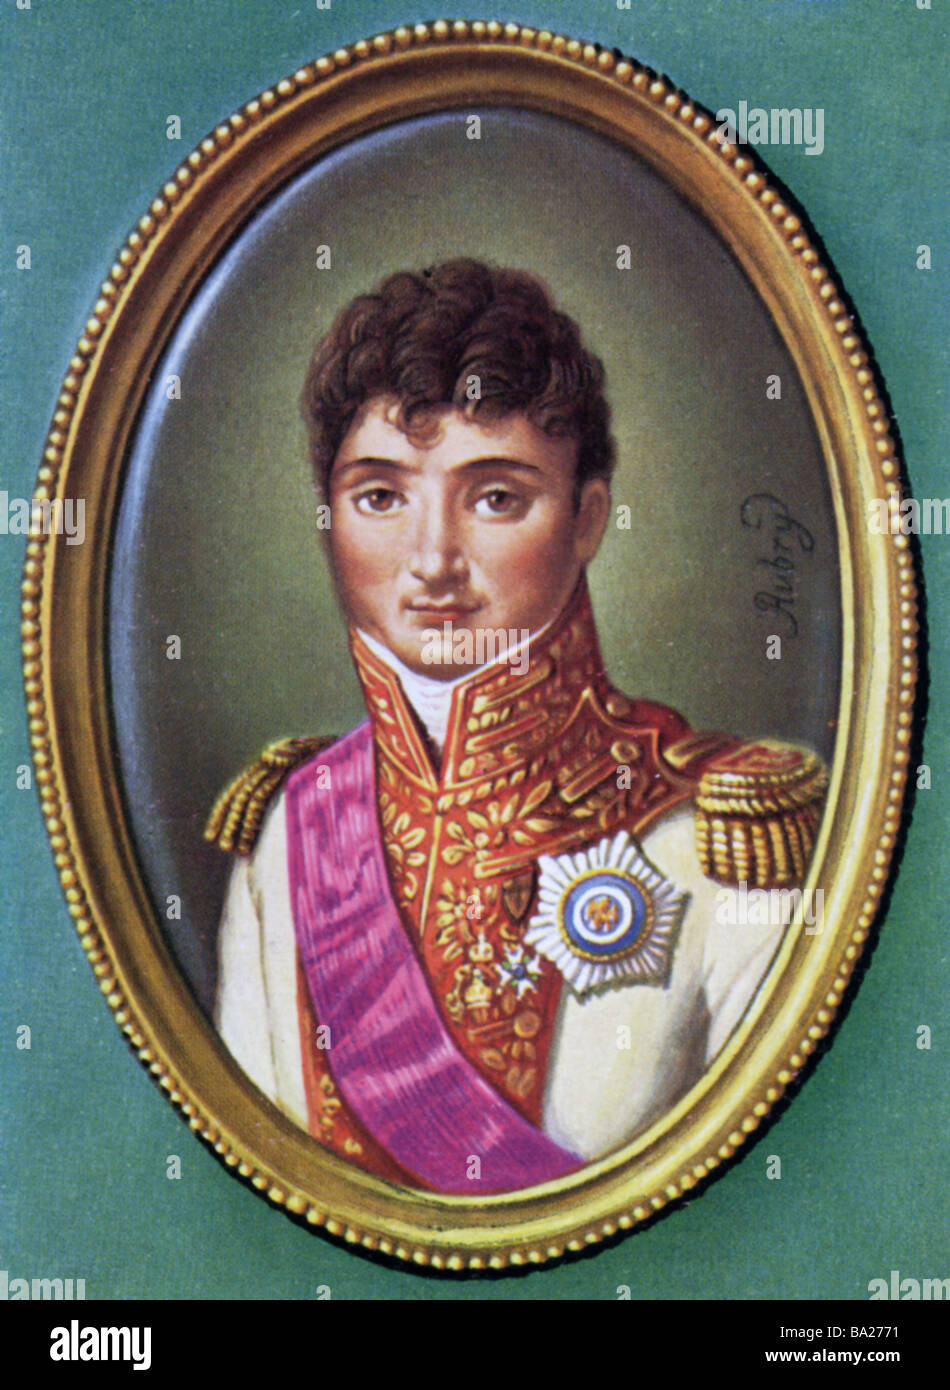 Bonaparte, Jerome, 15.11.1784 - 24.6.1860, King of Westphalia 1807 - 1813, portrait, print after miniature by Louis Francois Aub Stock Photo